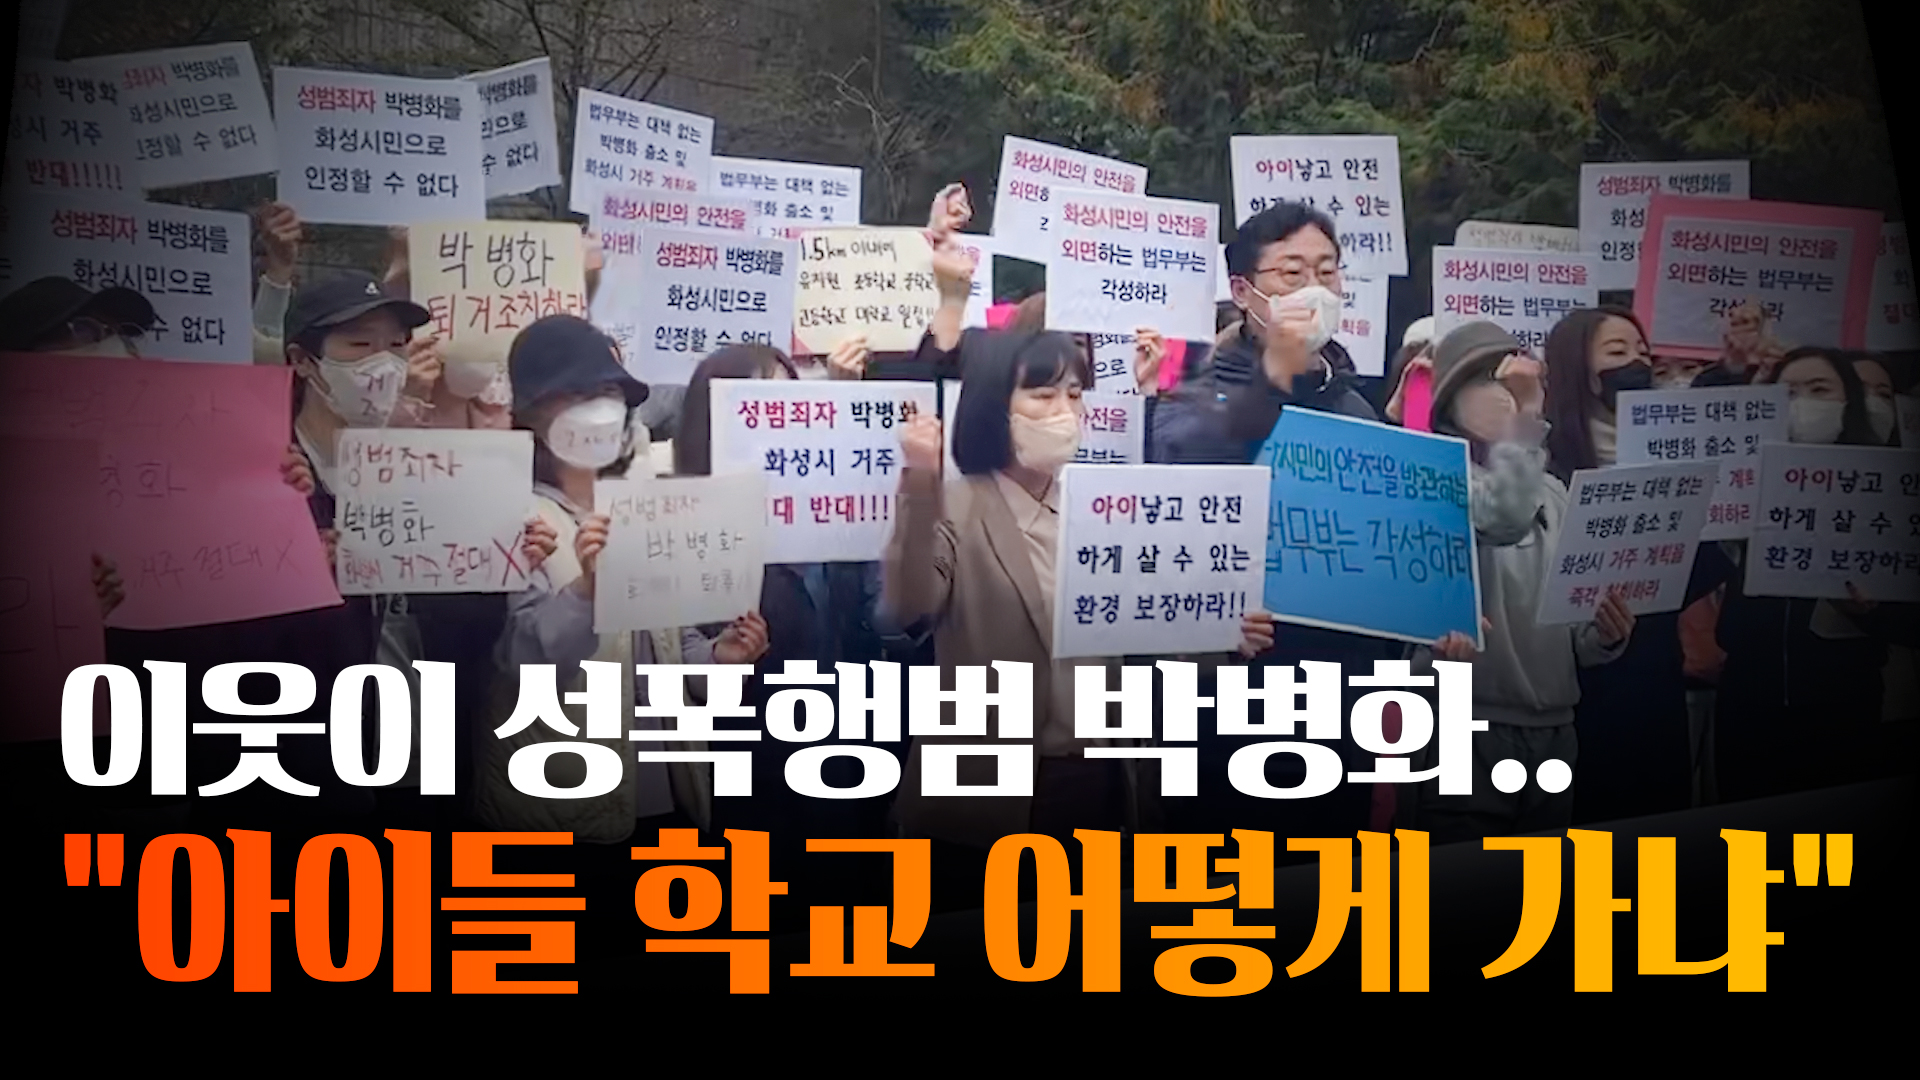 화성 봉담 학부모들, 박병화 거주지 찾아 법무부 규탄